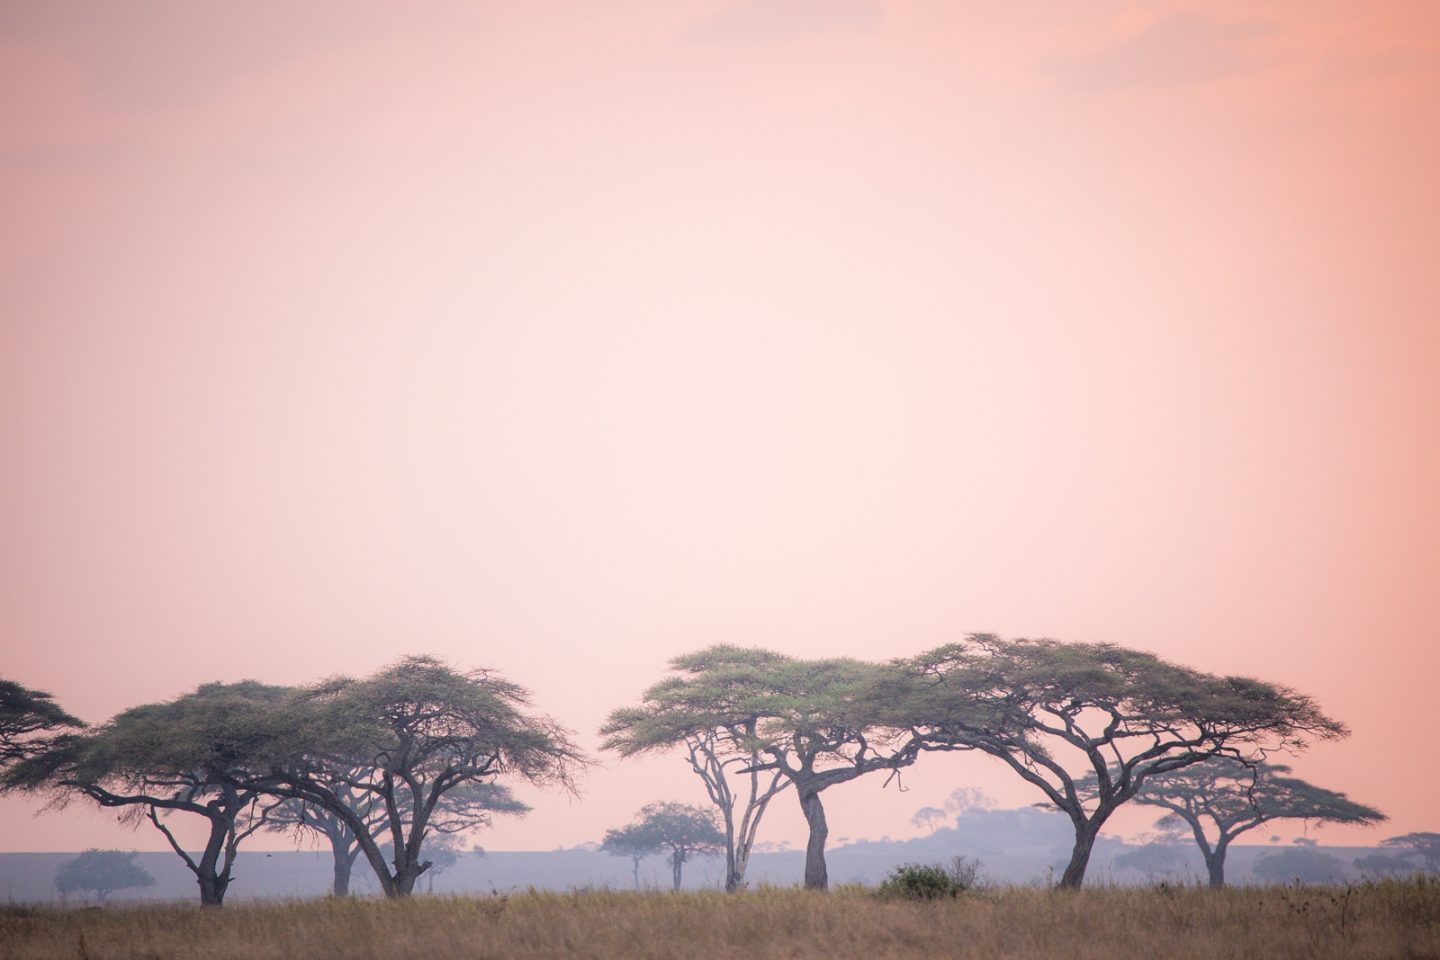 Sunset over the Serengeti.